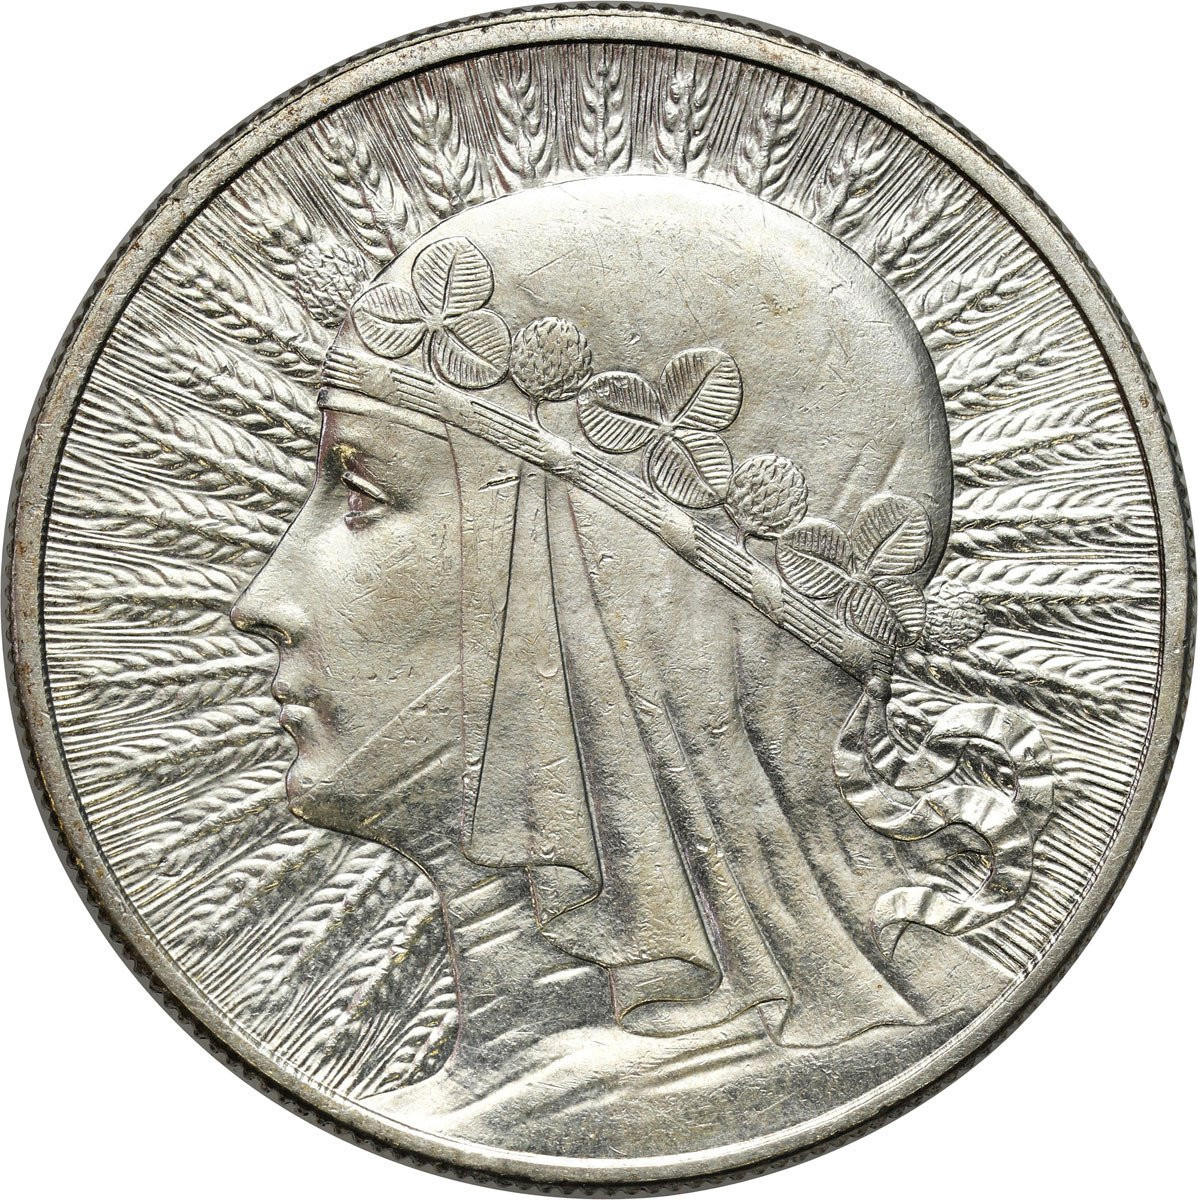 II RP. 10 złotych 1932 głowa kobiety (bez znaku mennicy)